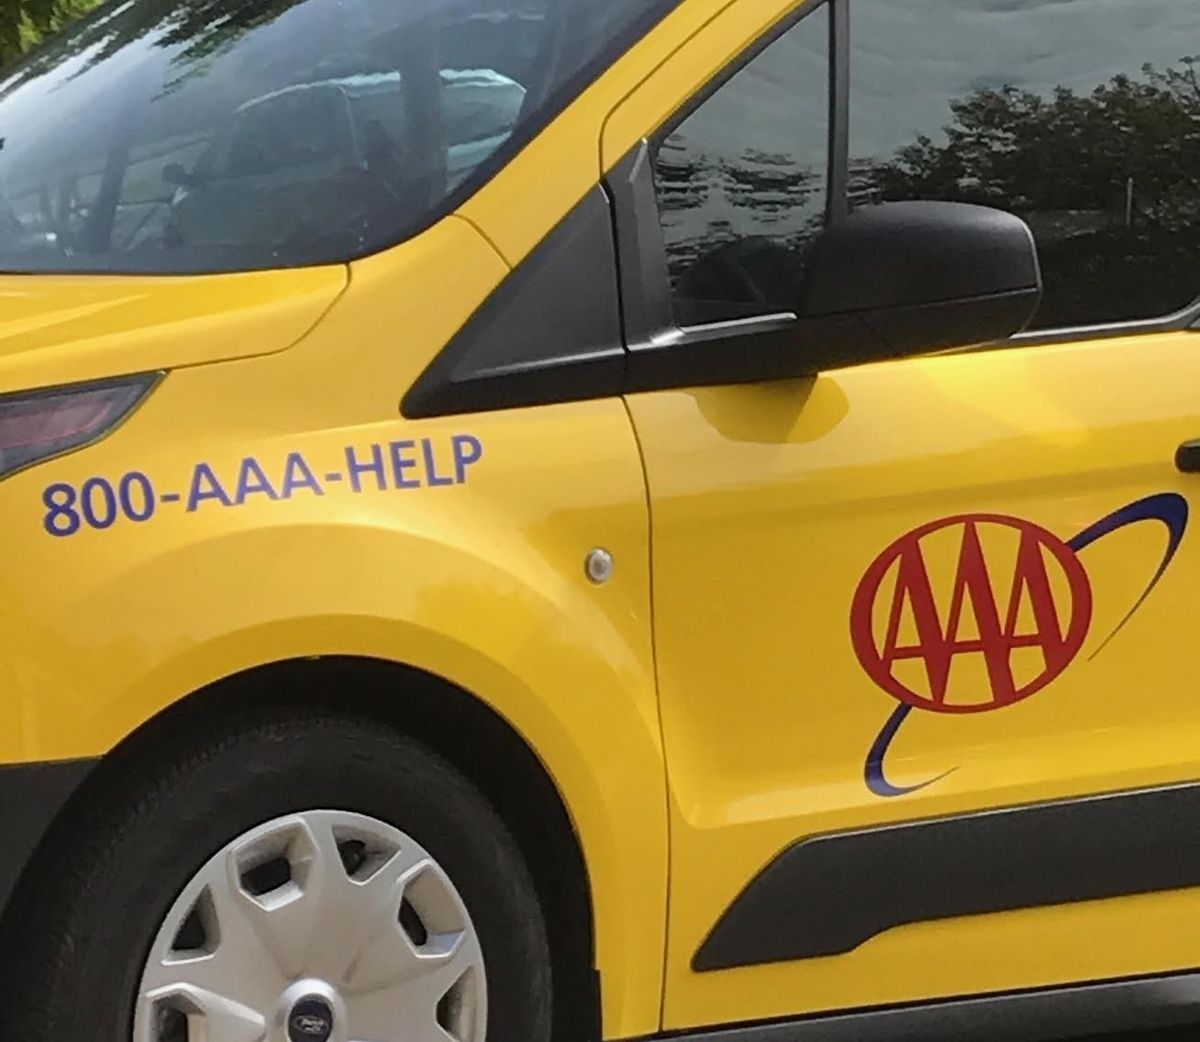 Mama je morala nazvati AAA zbog dečka iz AAA jer je zaključao svoj auto pokušavajući otključati njezin auto